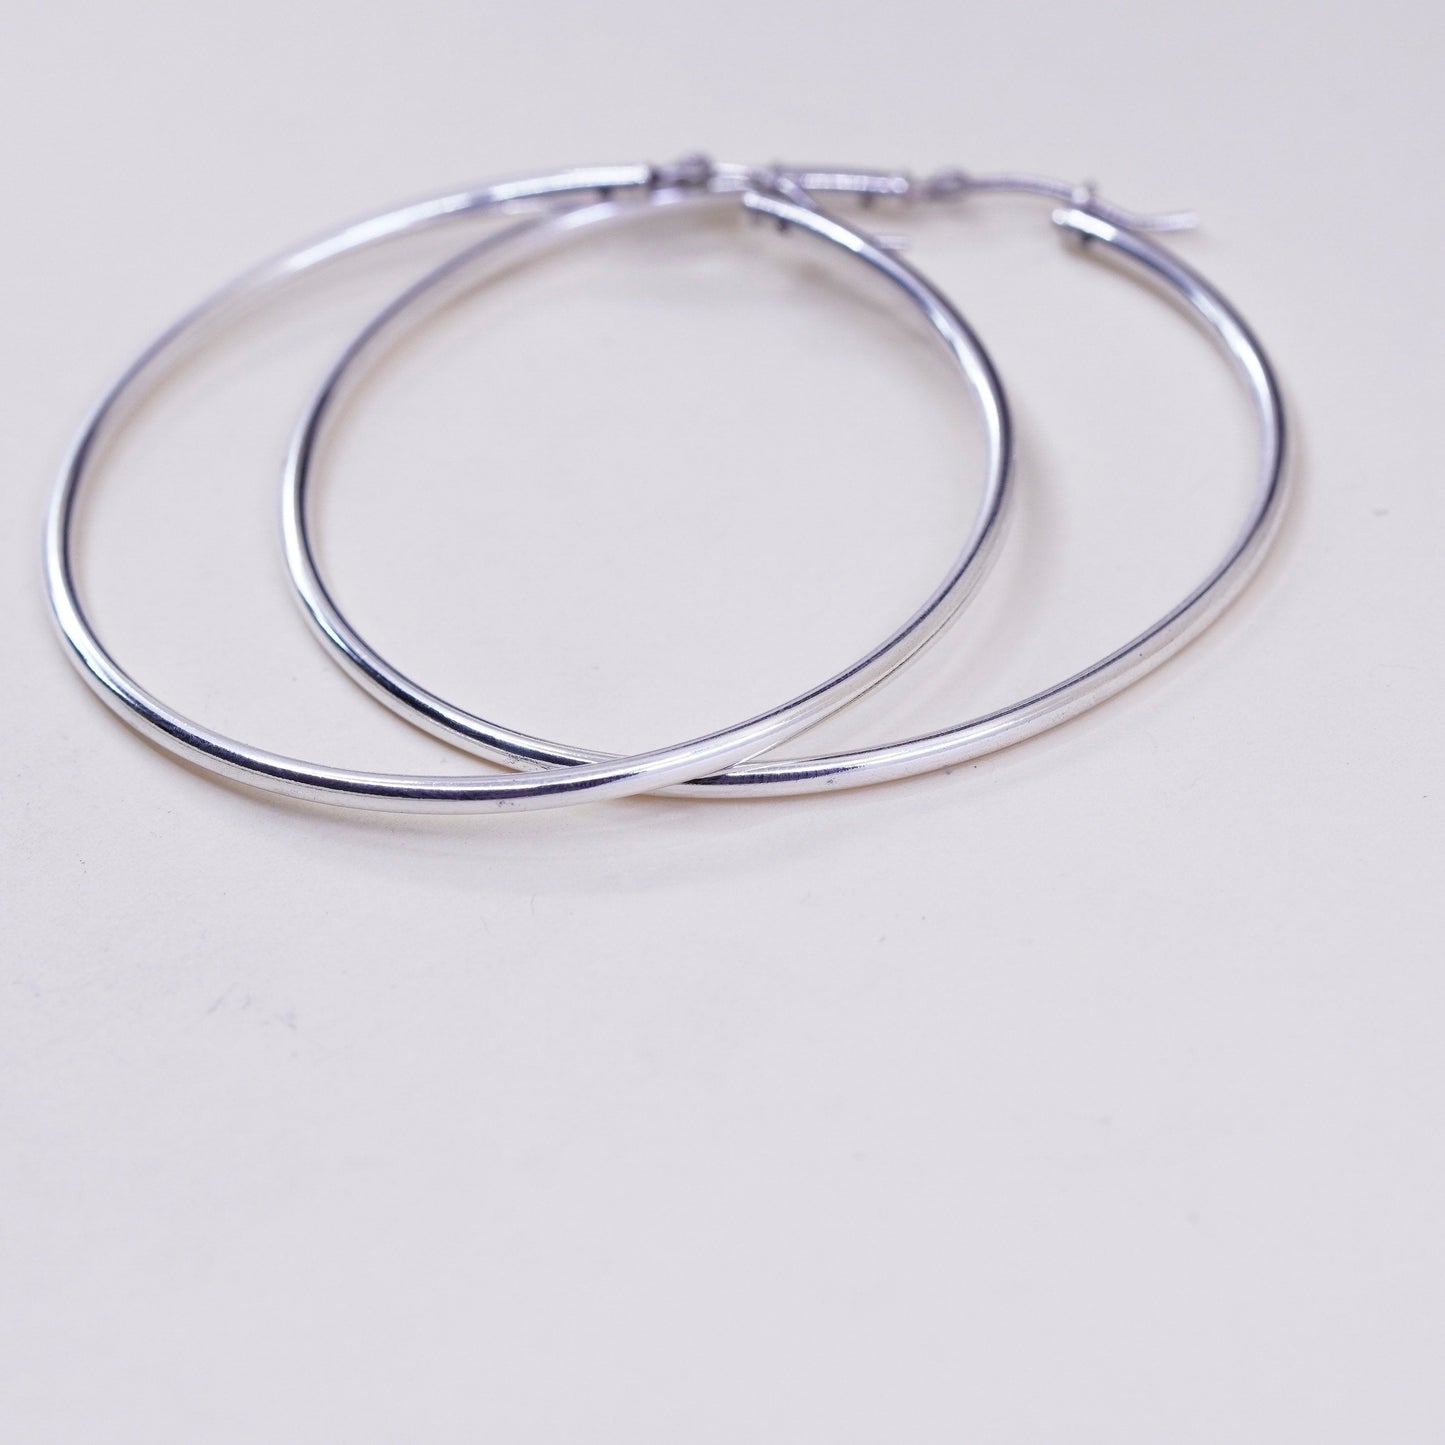 2.25”, vintage ATI sterling silver handmade earrings, 925 huge textured hoops